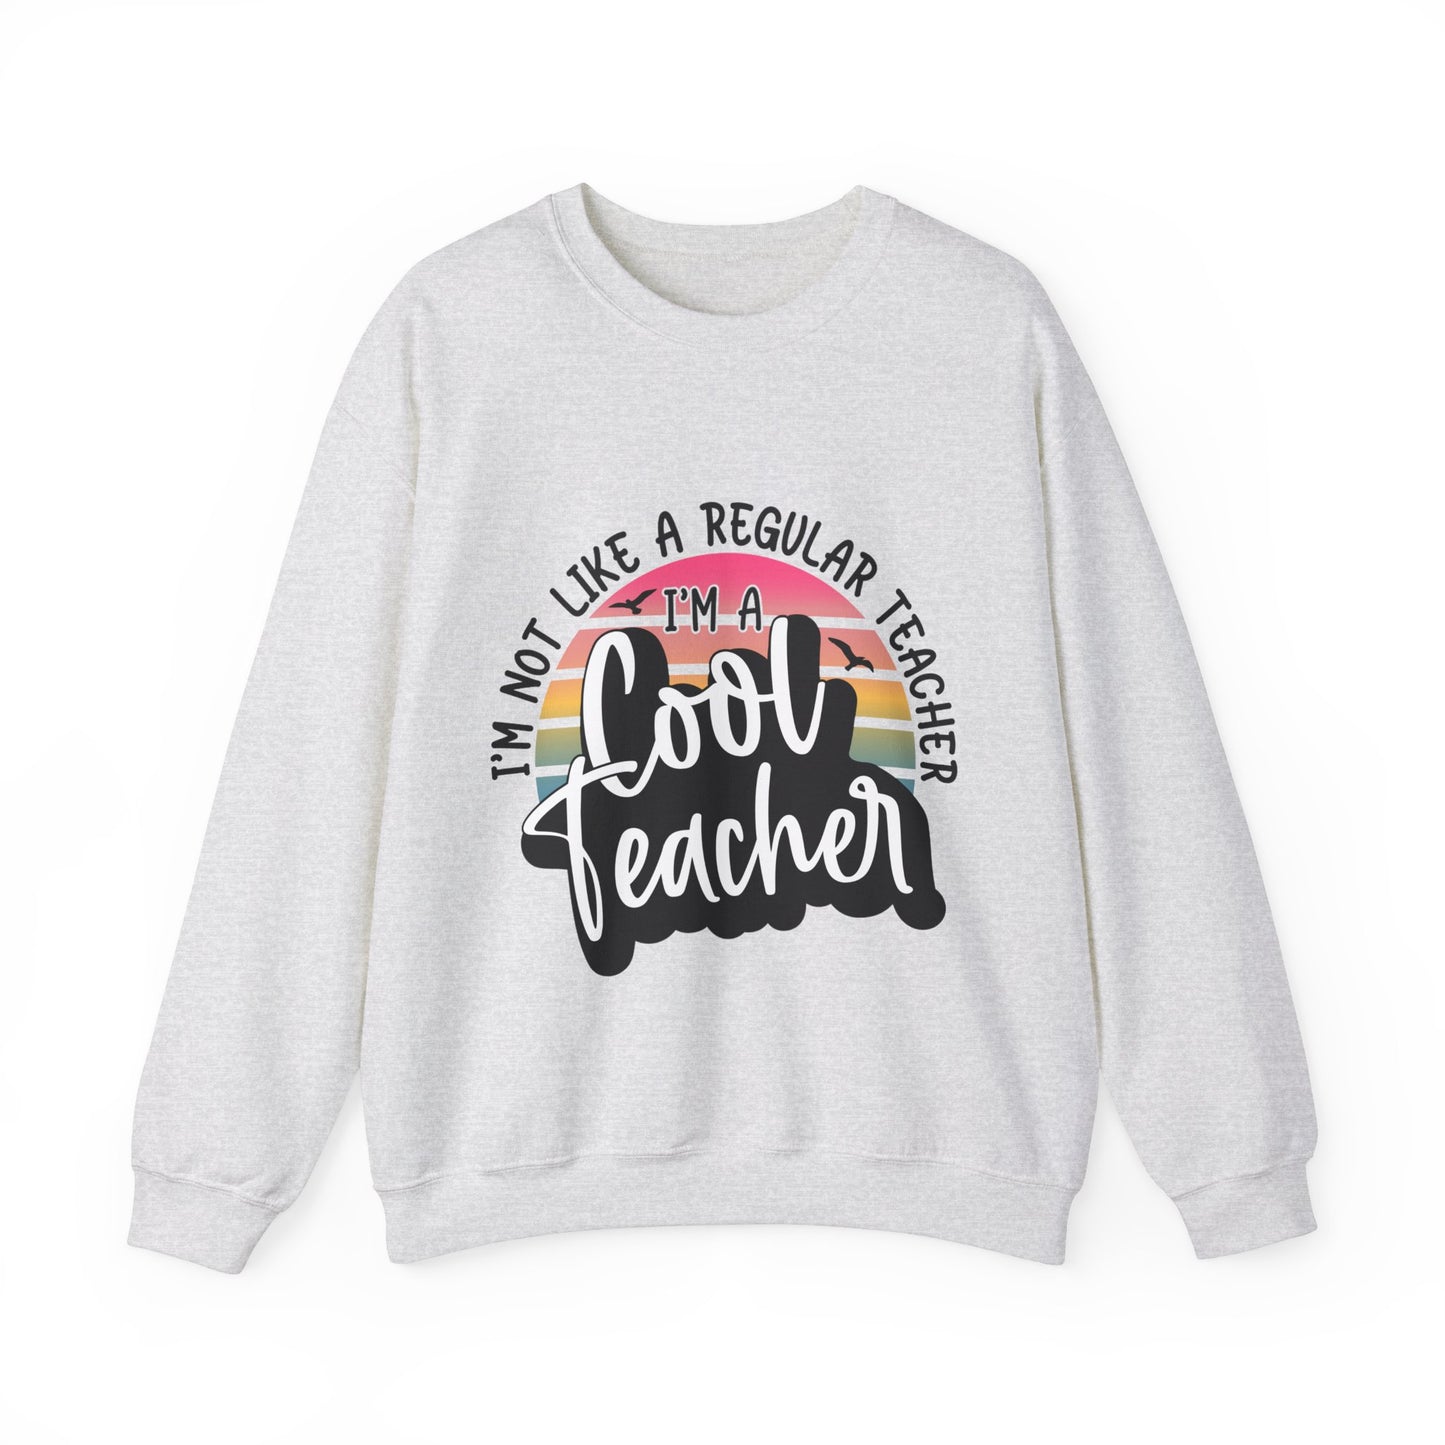 I'm Not Like a Regular Teacher, I'm a Cool Teacher Unisex Heavy Blend™ Crewneck Sweatshirt